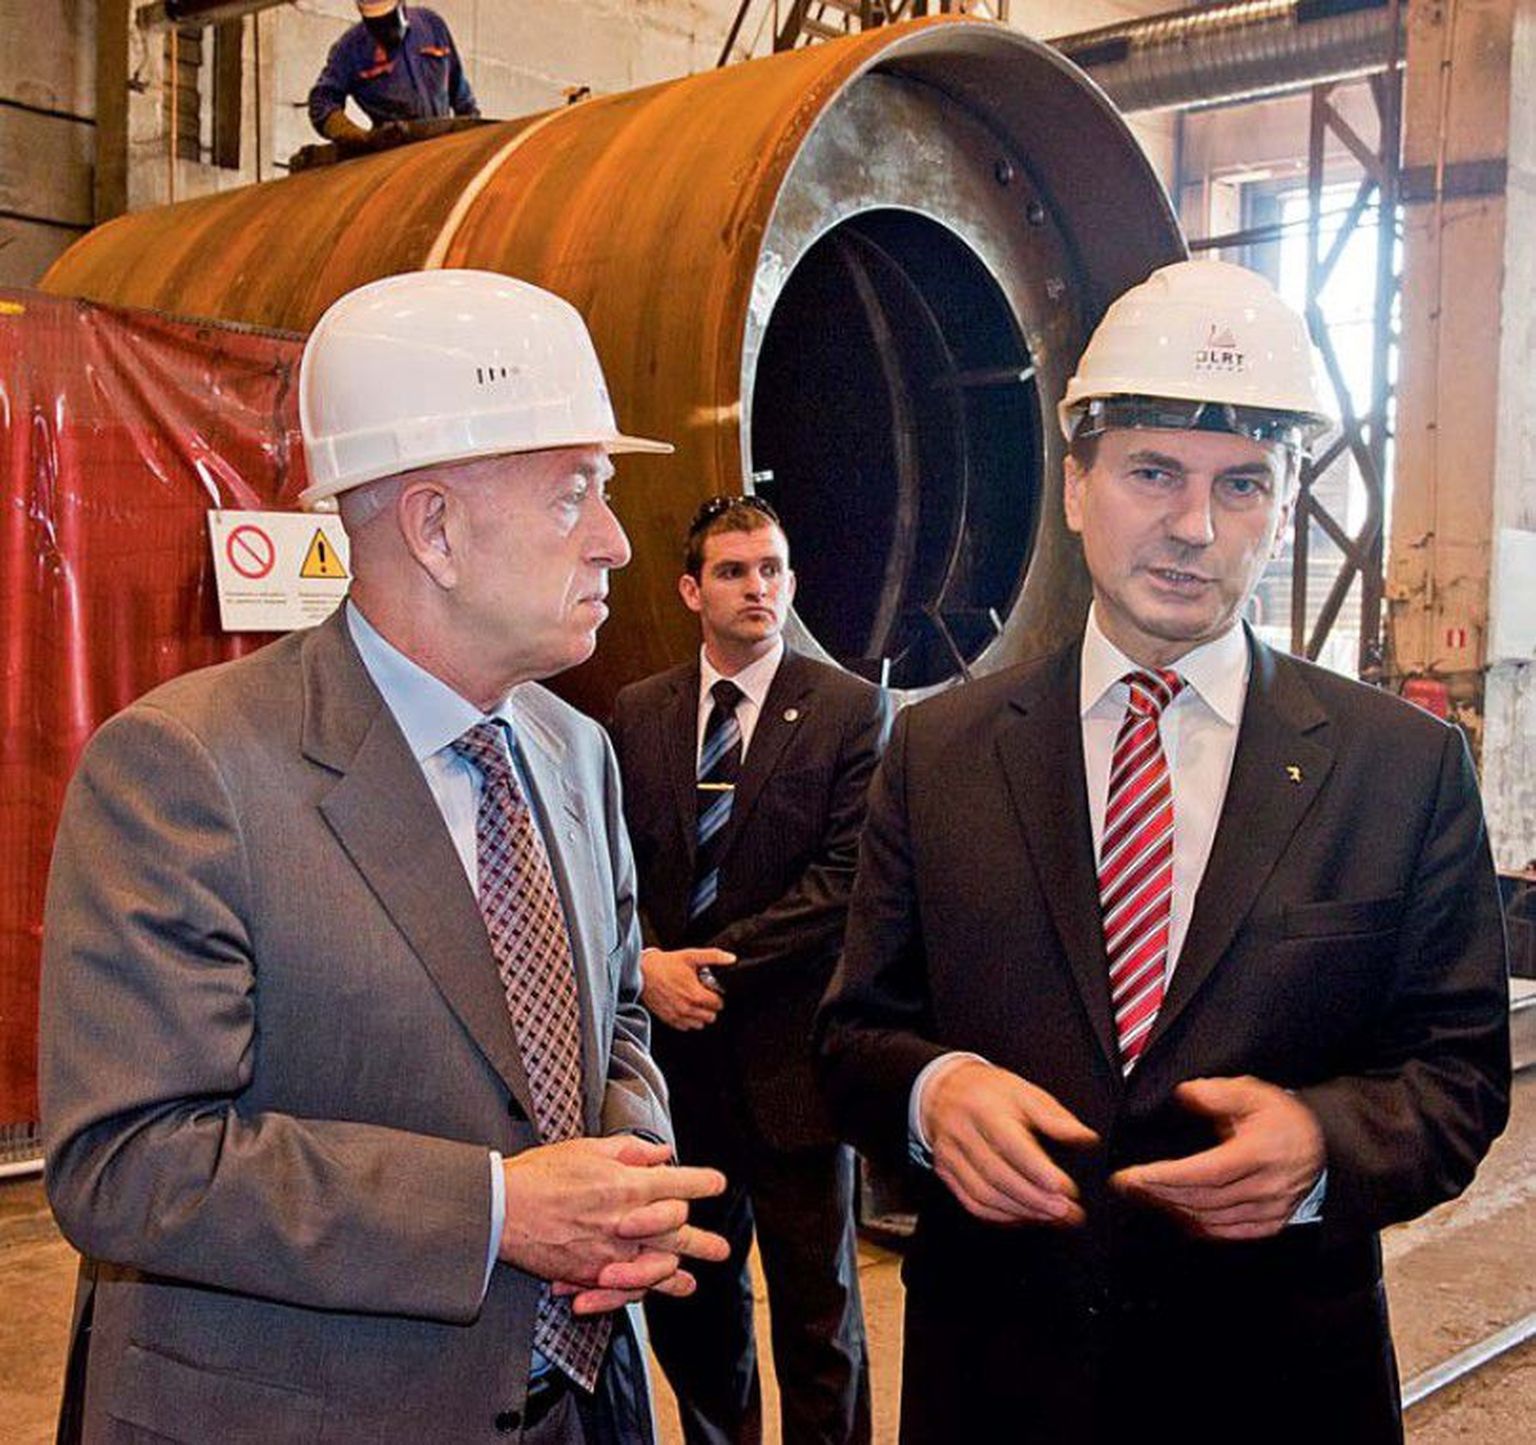 BLRT’i juht Fjodor Berman tutvustab oma tehast peaminister Andrus Ansipile.